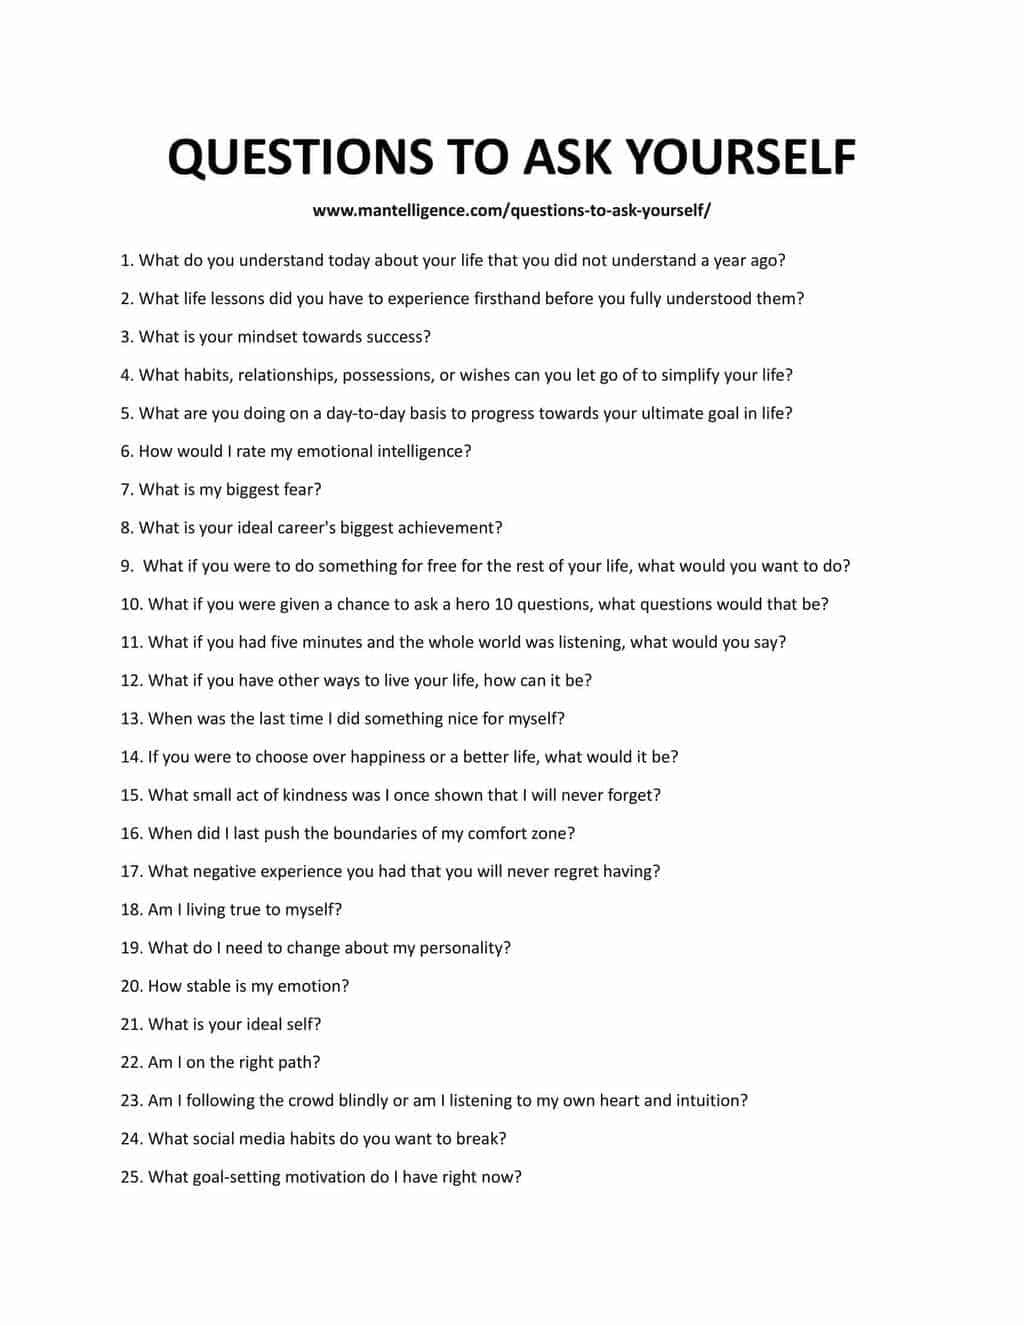 28 grandes preguntas que debes hacerte hoy